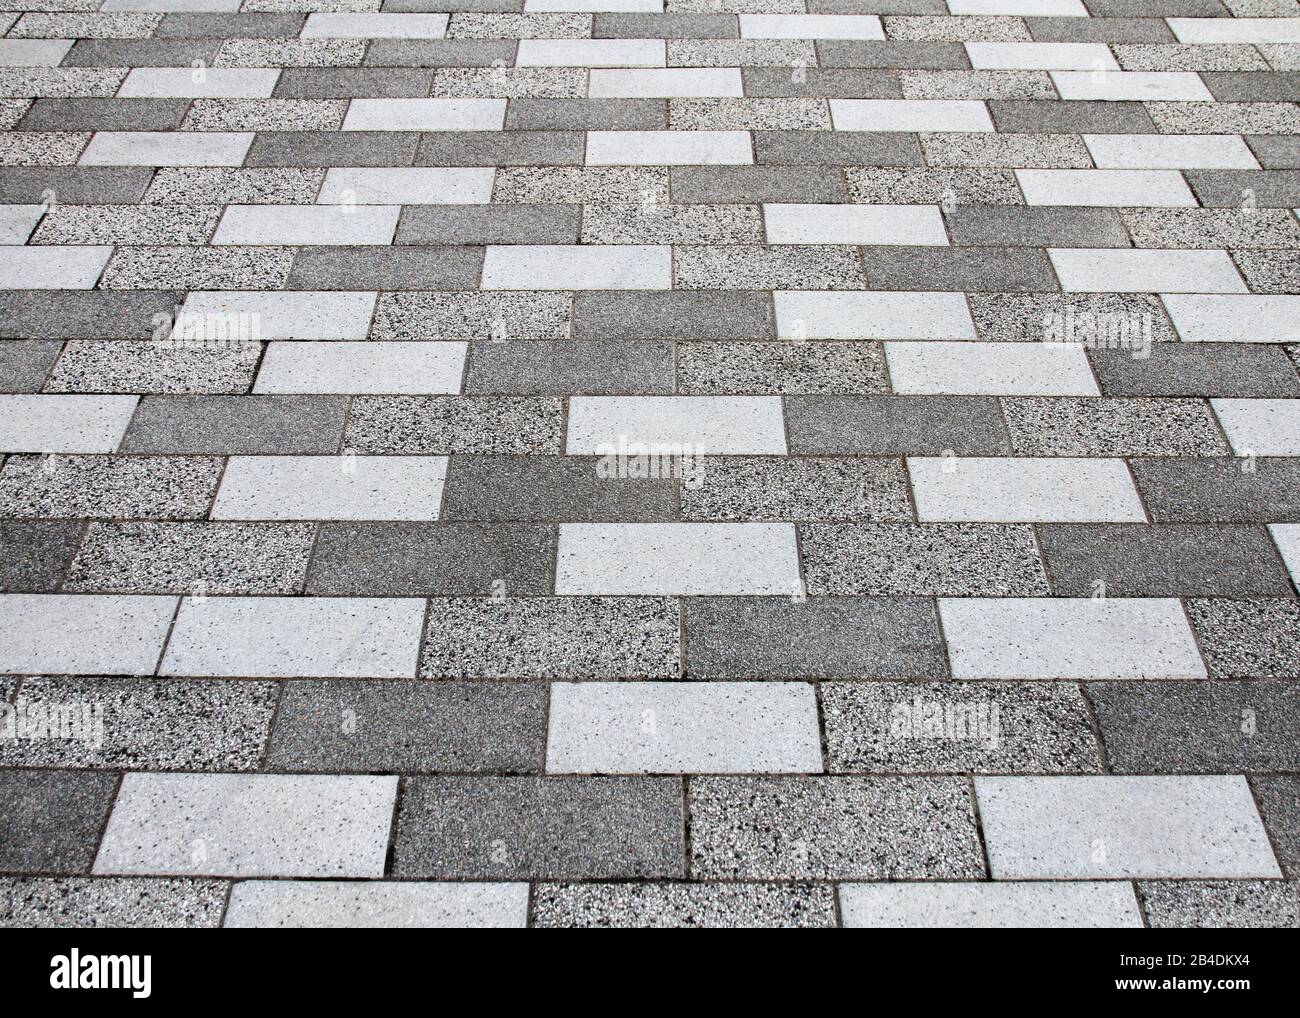 Vue en perspective des tuiles grises et blanches des trottoirs formant un motif abstrait. Banque D'Images